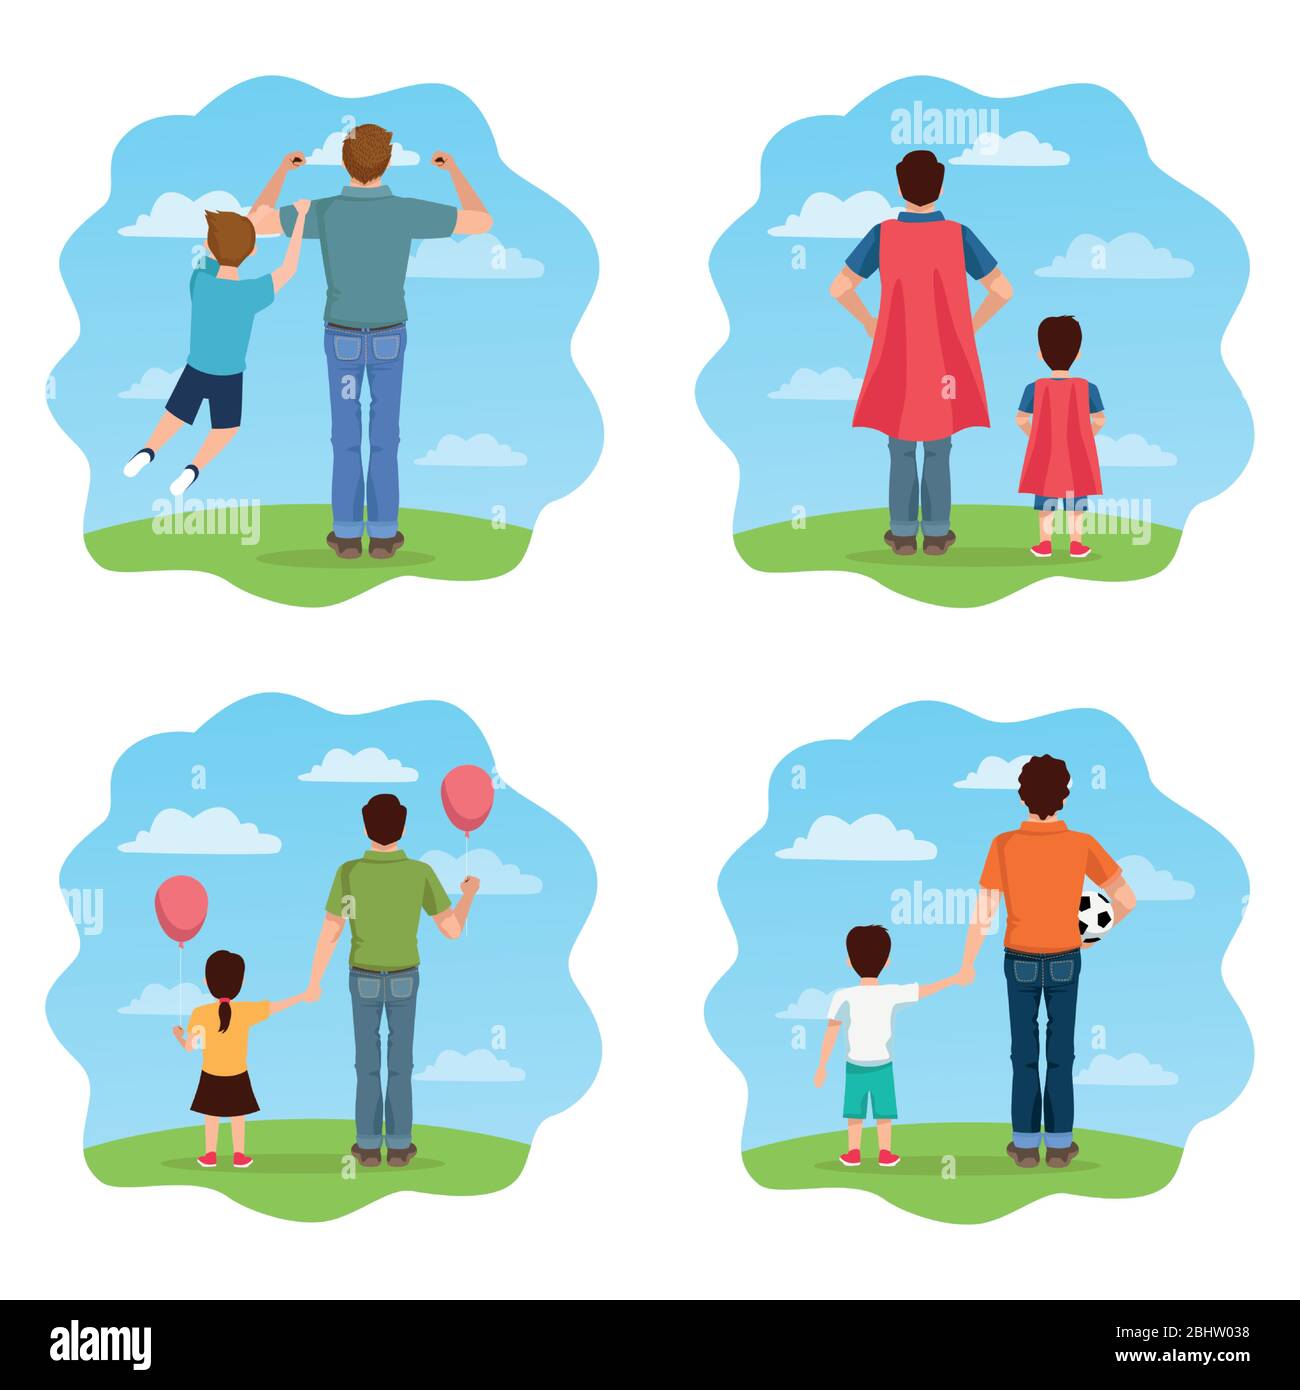 Vatertagskarte mit daddies und Kinder Zeichen Stock Vektor